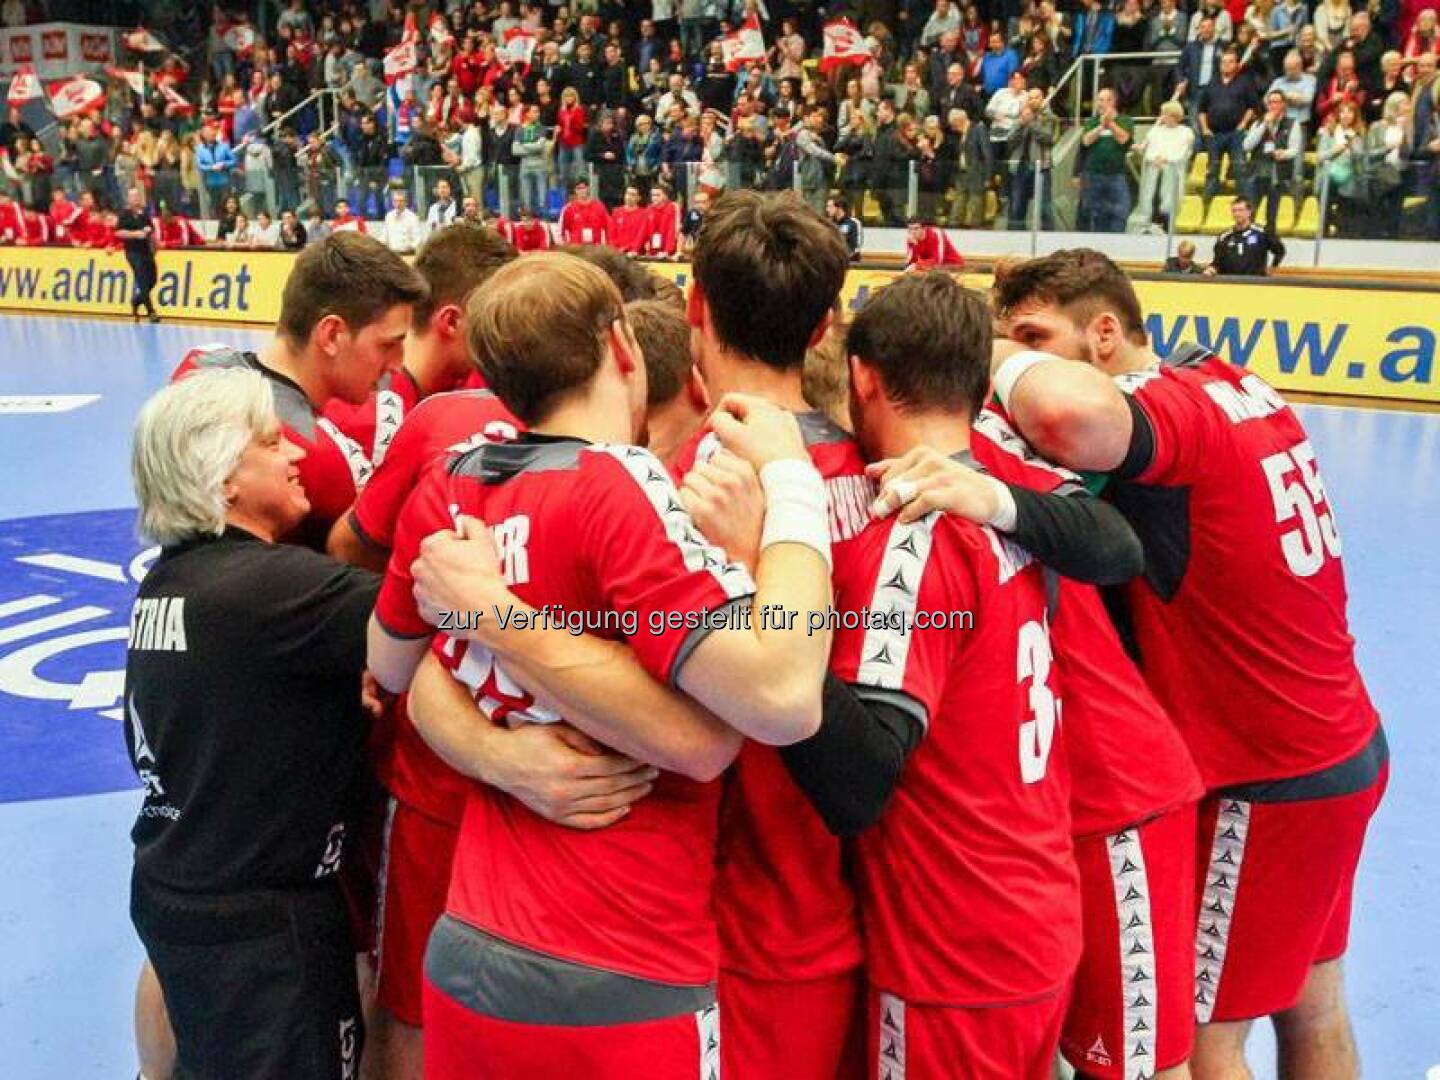 Uniqa: Herzlichen Glückwunsch! Mit einem souveränen 32:20 gegen Finnland hat es Österreichs Handball-Nationalteam heute ins WM-Play-Off geschafft. Wir freuen uns schon auf die weiteren Spiele! Handball AUSTRIA  Source: http://facebook.com/uniqa.at